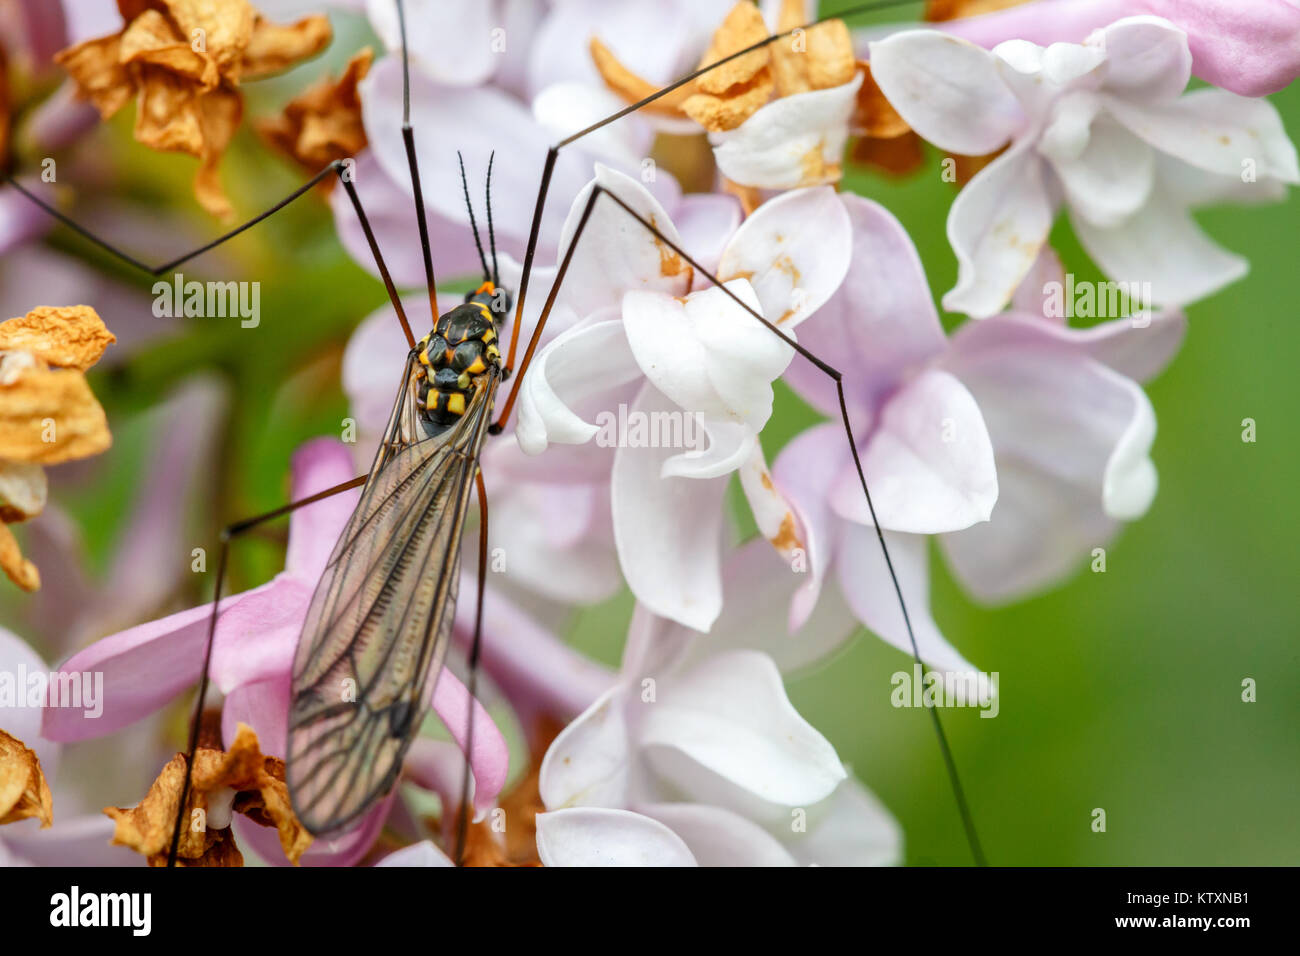 Insecte ou bug sur la fleur. Close up macro photo de moustique. Banque D'Images